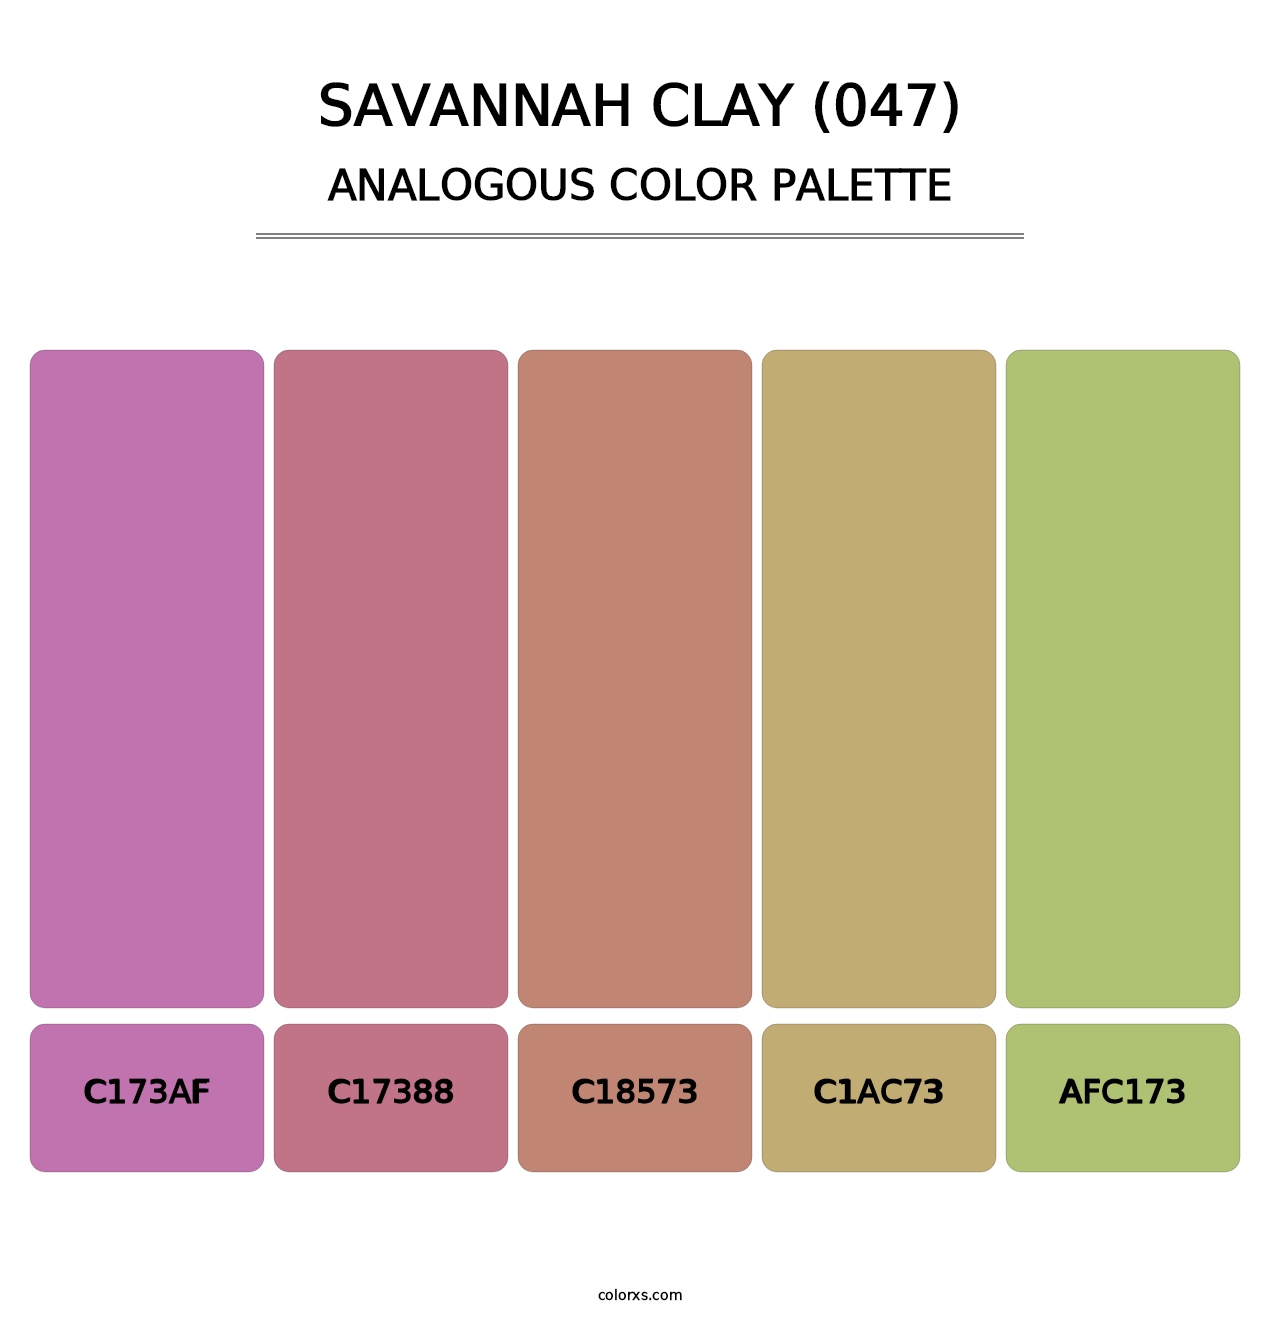 Savannah Clay (047) - Analogous Color Palette